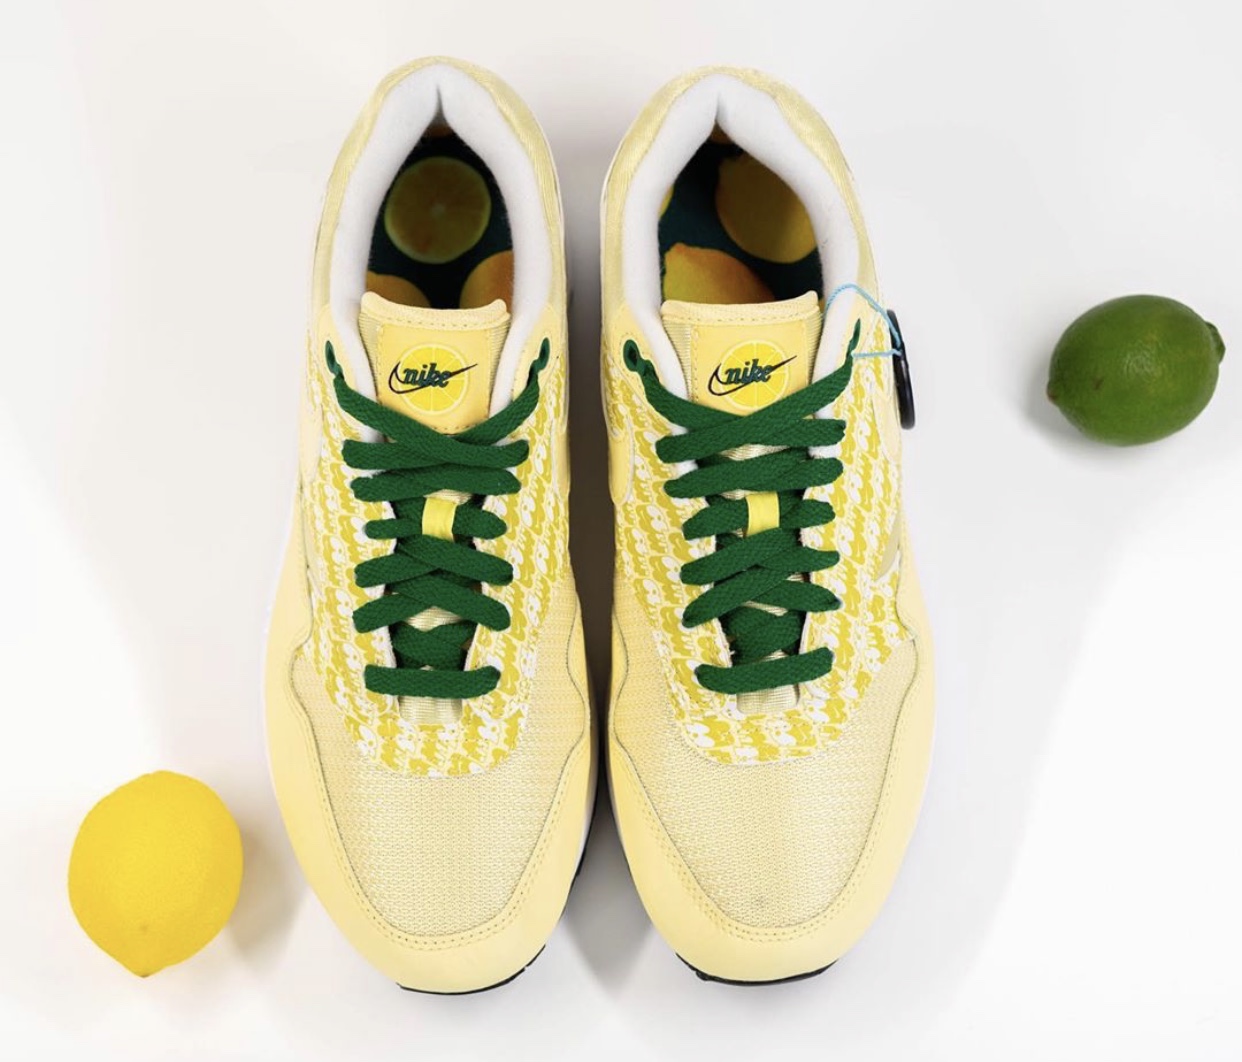 Nike Air Max 1 Lemonade CJ0609-700 2020 Release Date